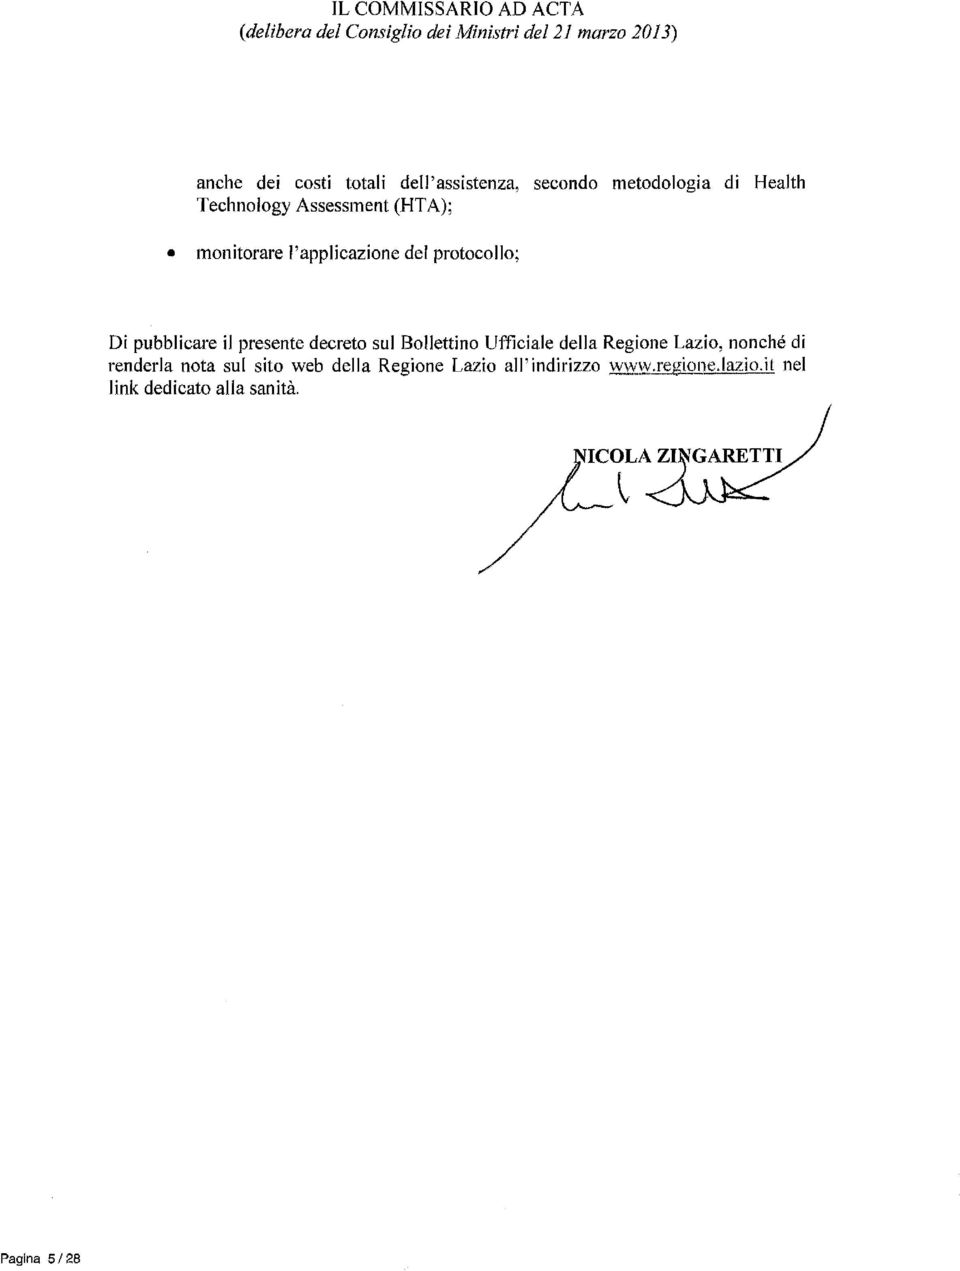 protocollo; Di pubblicare il presente decreto sul Bollettino Ufficiale della Regione Lazio, nonché di